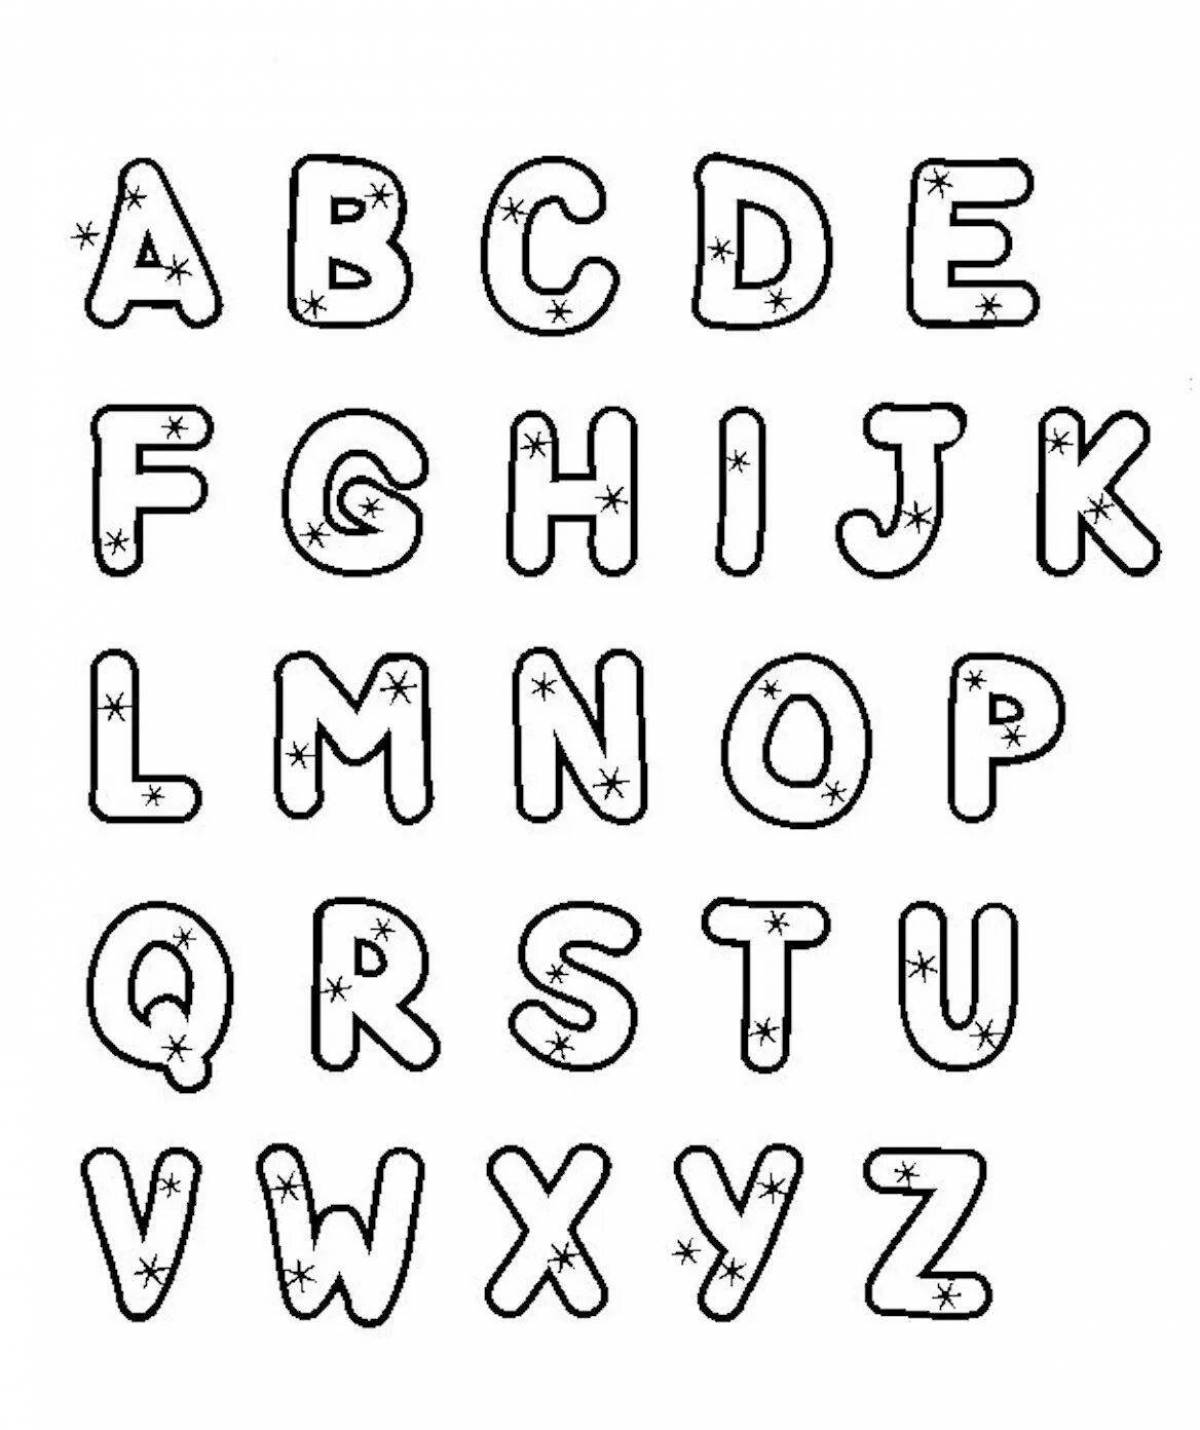 Скопировать английские буквы. Раскраска "алфавит английский". Английский алфавит раскраска для детей. Английские буквы для разукрашивания. Буквы алфавита для раскрашивания.